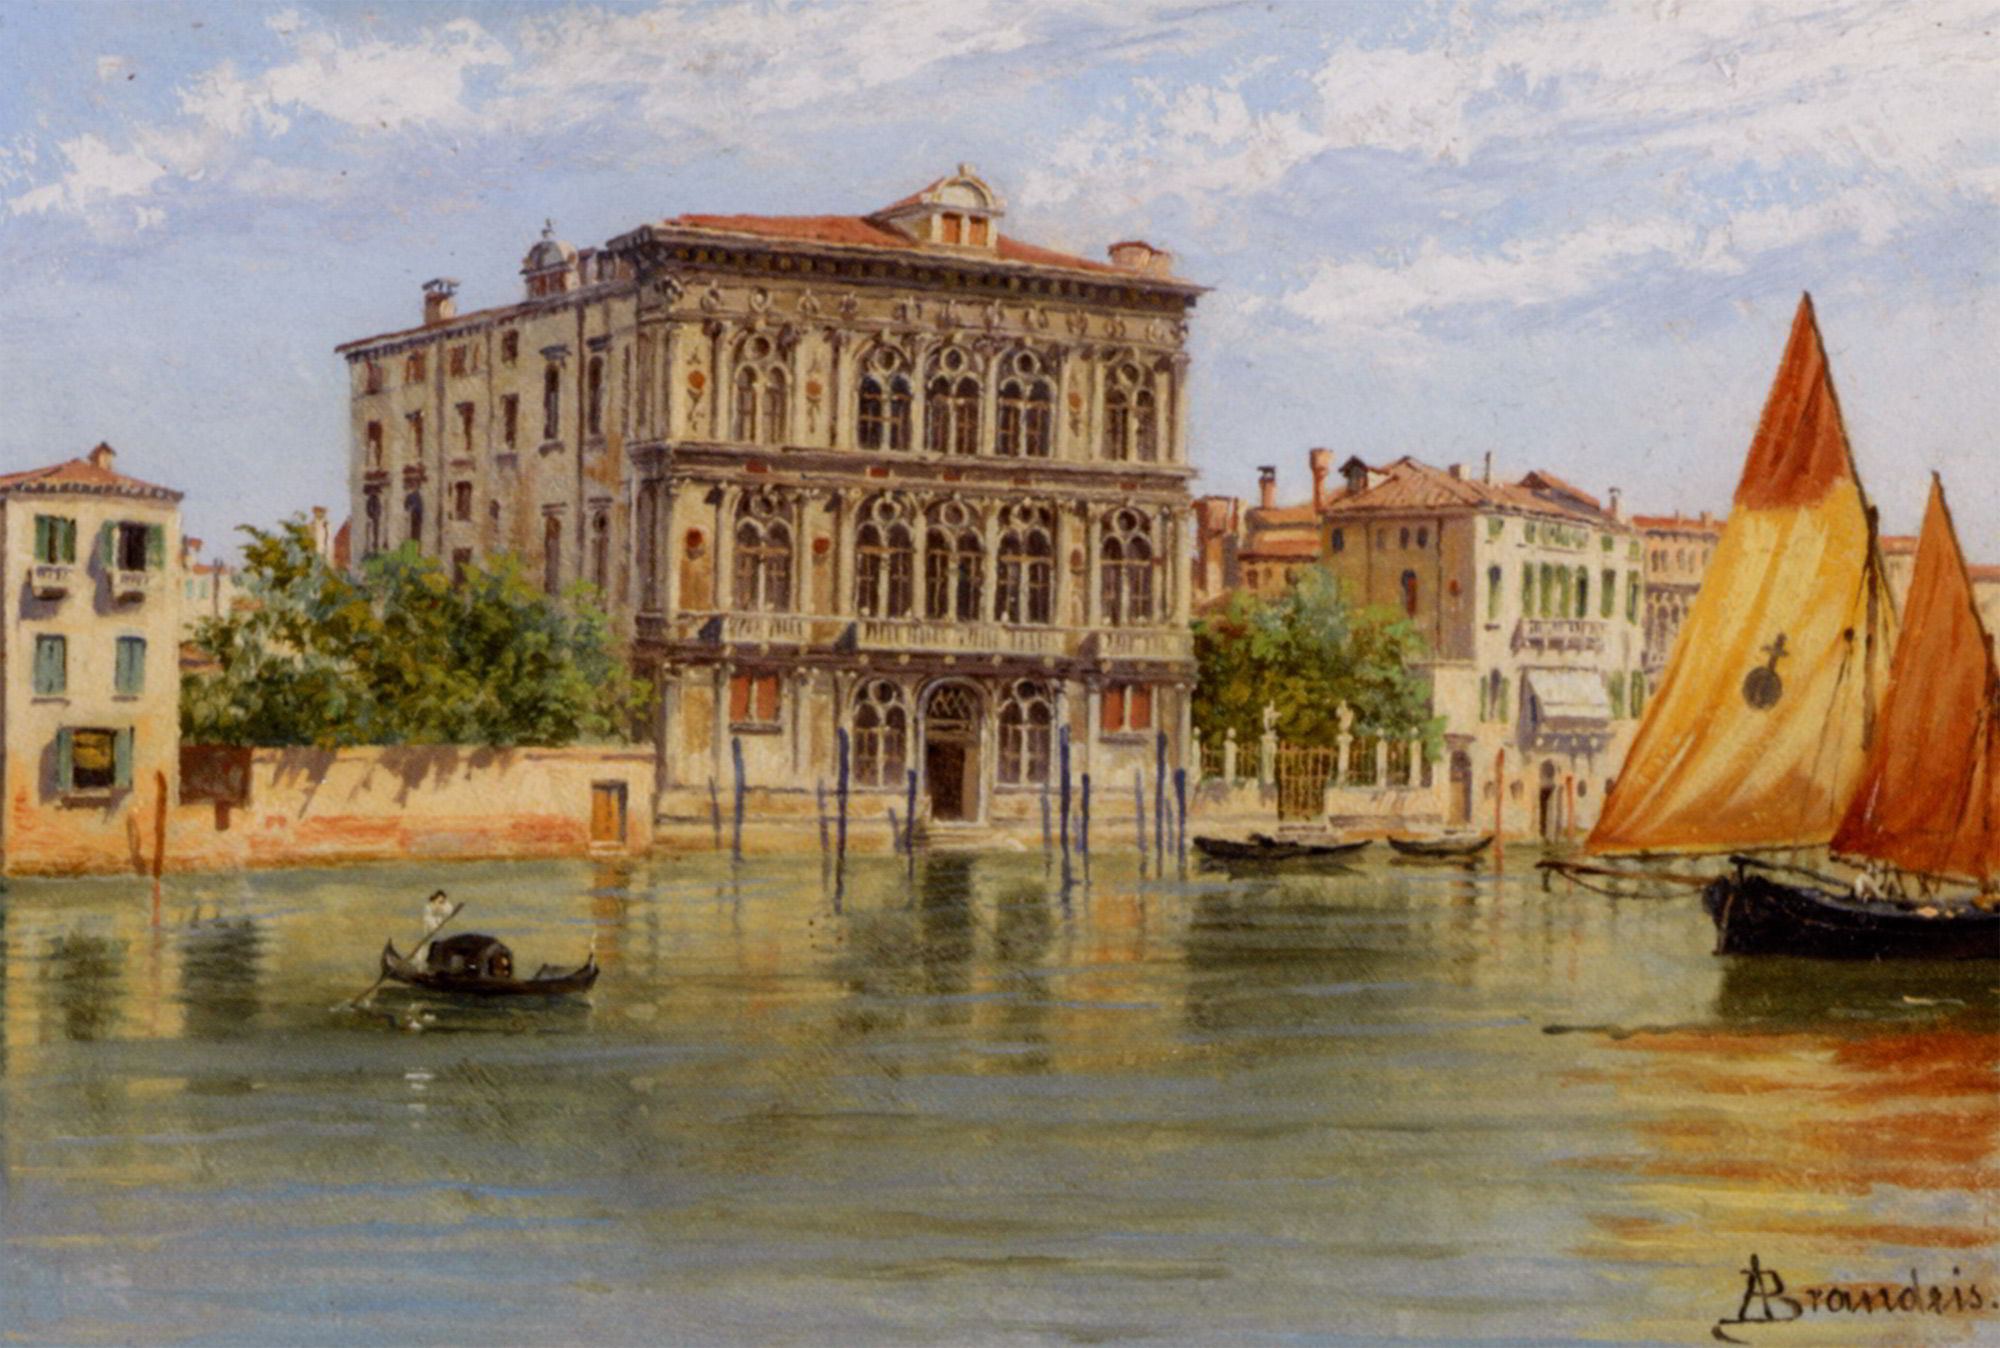 Palazzo Camerlenghi and the Ca Vendramin Calergi in Venice by Antonietta Brandeis